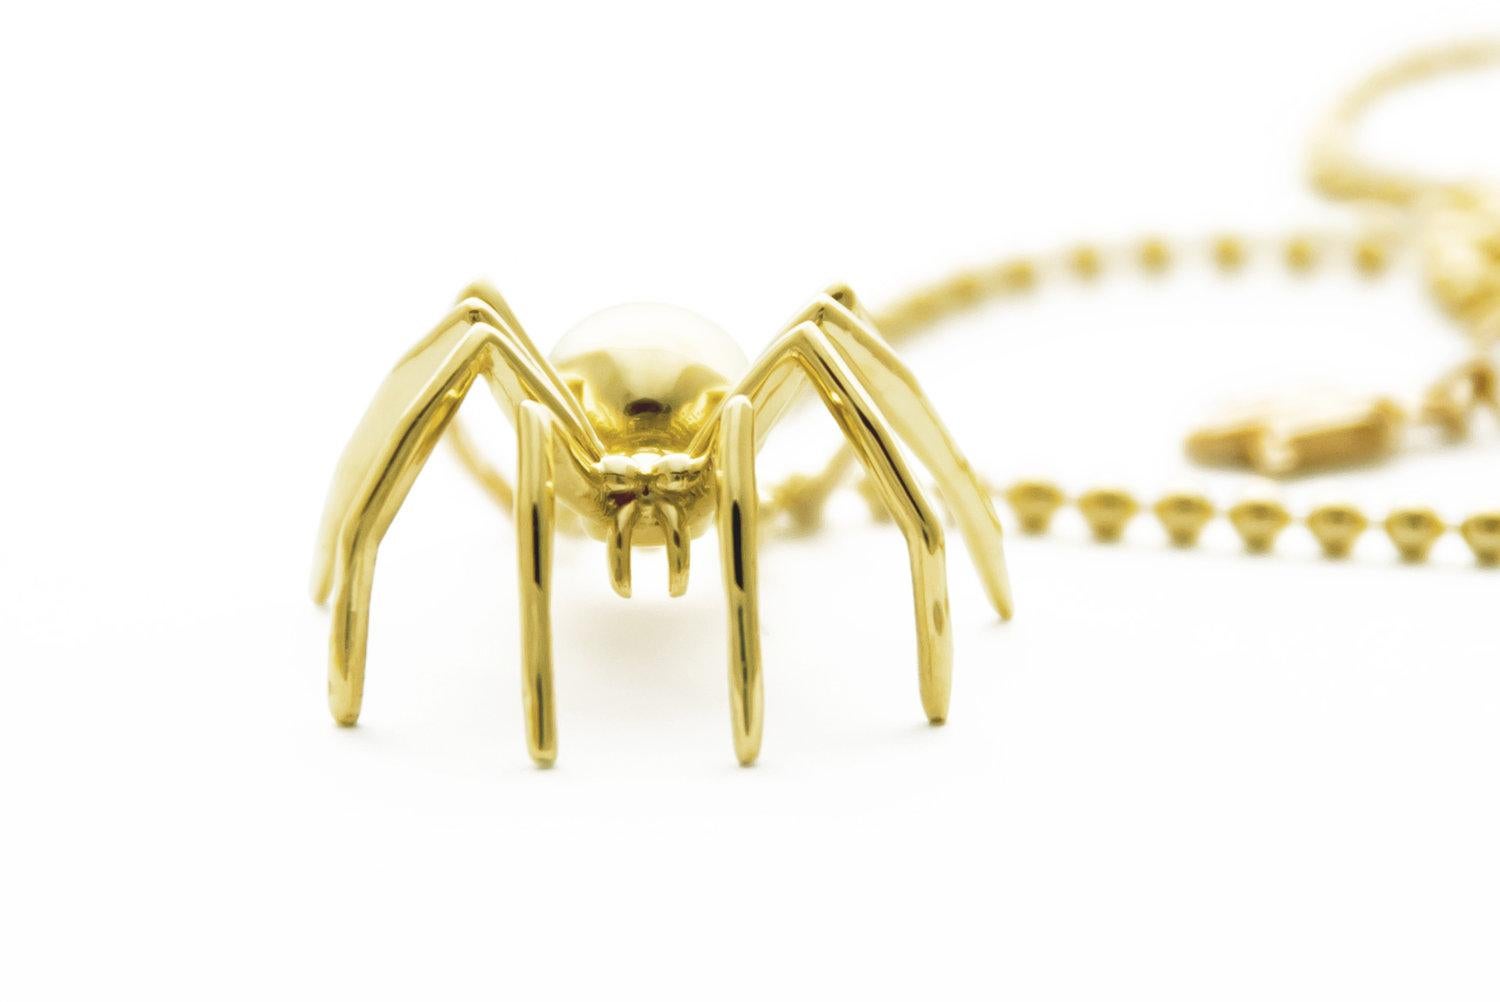 Découvrez la beauté enchanteresse du pendentif Medium Spider en or jaune massif, un symbole exquis de créativité et d'autodétermination. Pendant des siècles, l'araignée a captivé notre imagination en tant que maître de son propre destin, incarnant